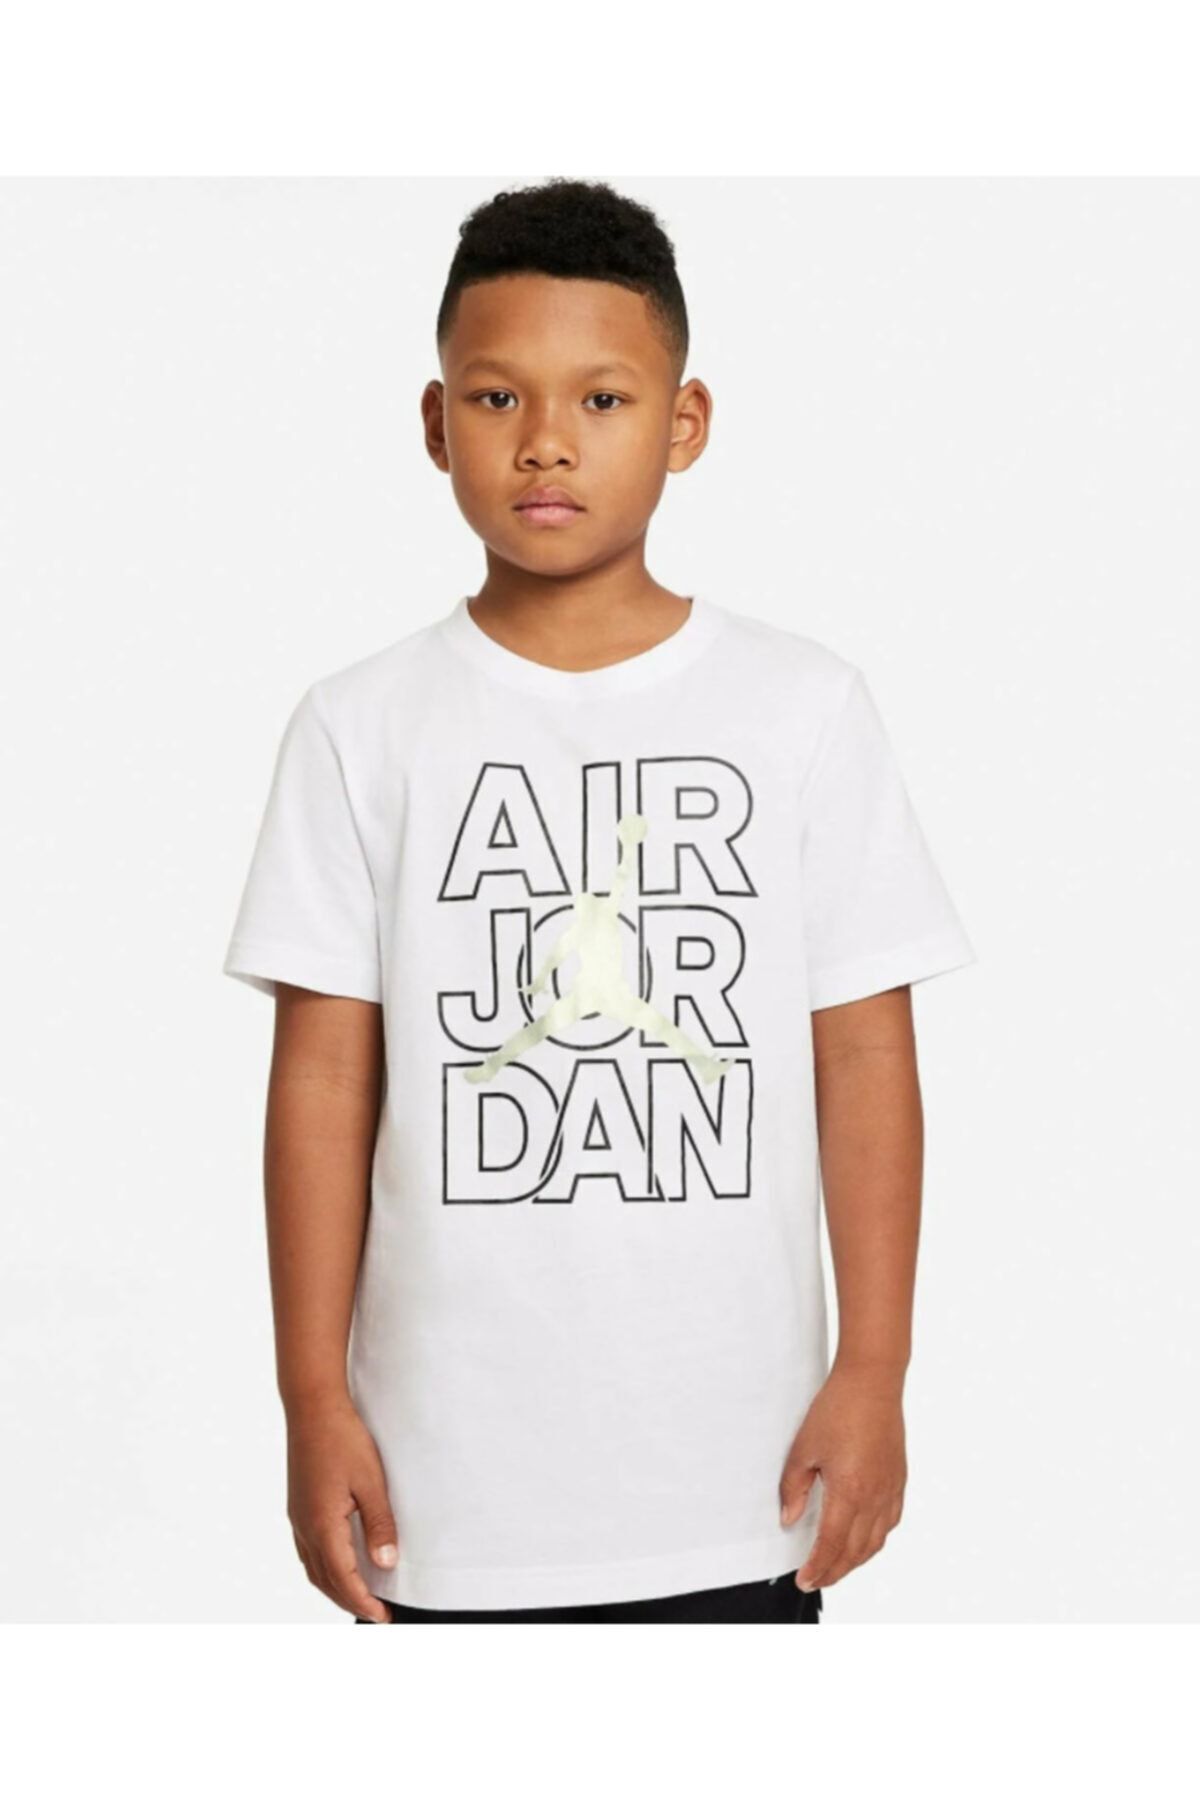 Nike Jdb Aır Jordan Wıld Trıbes Tee Erkek Çocuk Tişört 95a616-001